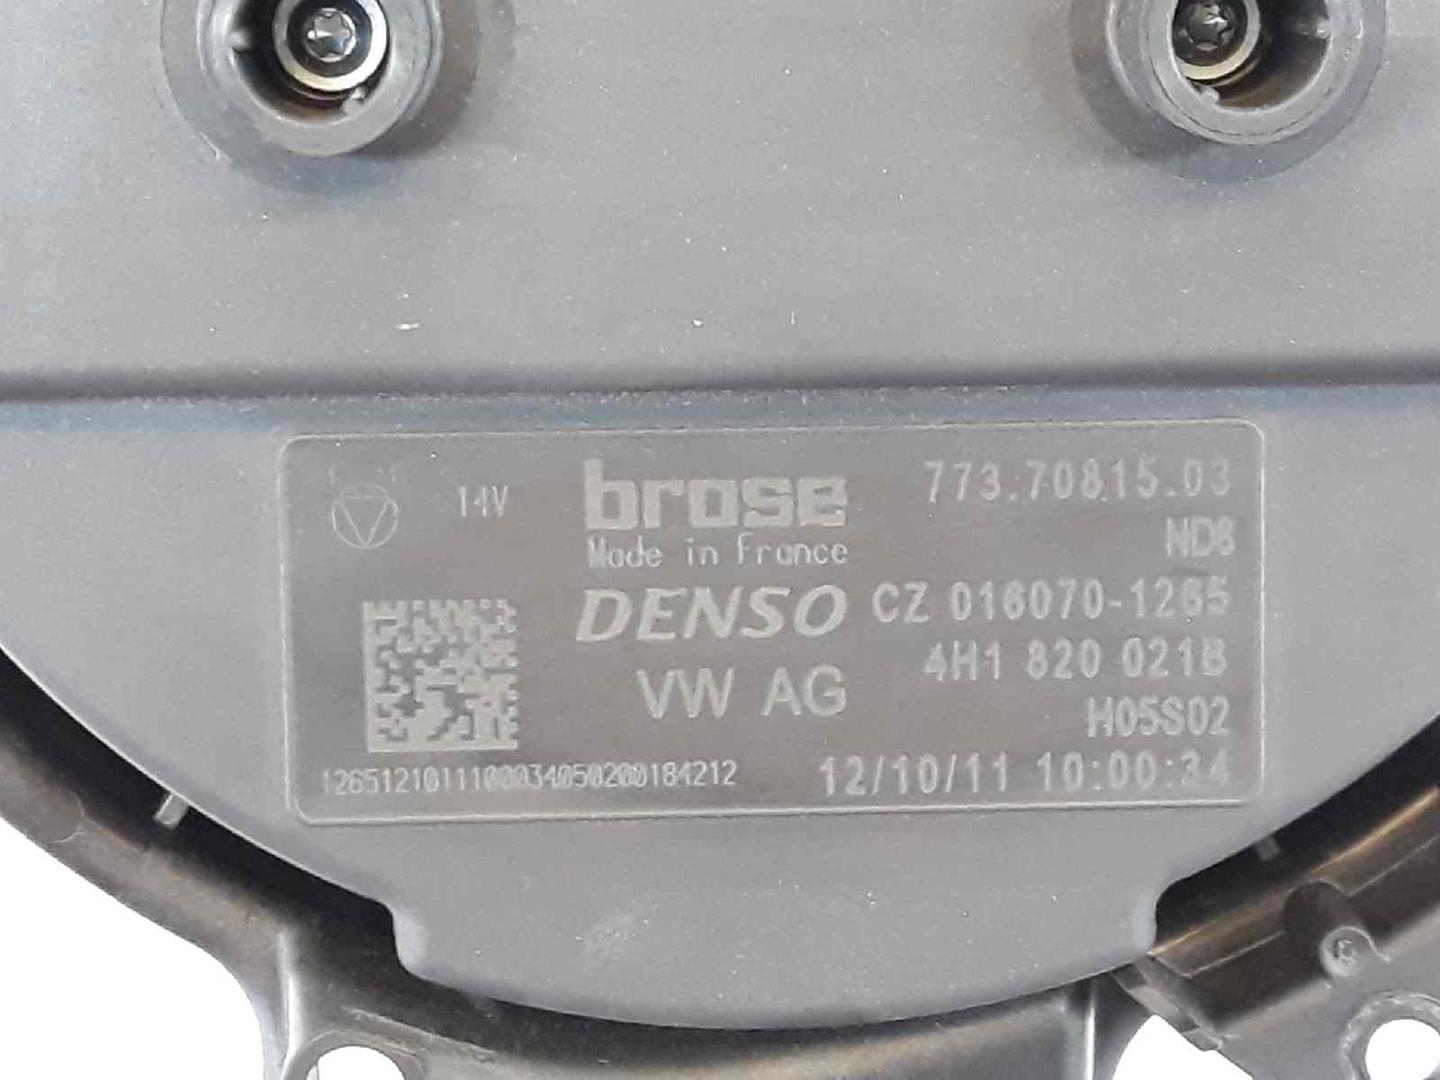 AUDI A7 C7/4G (2010-2020) Heater Blower Fan 4H1820021B, 4H1820021B 19657516